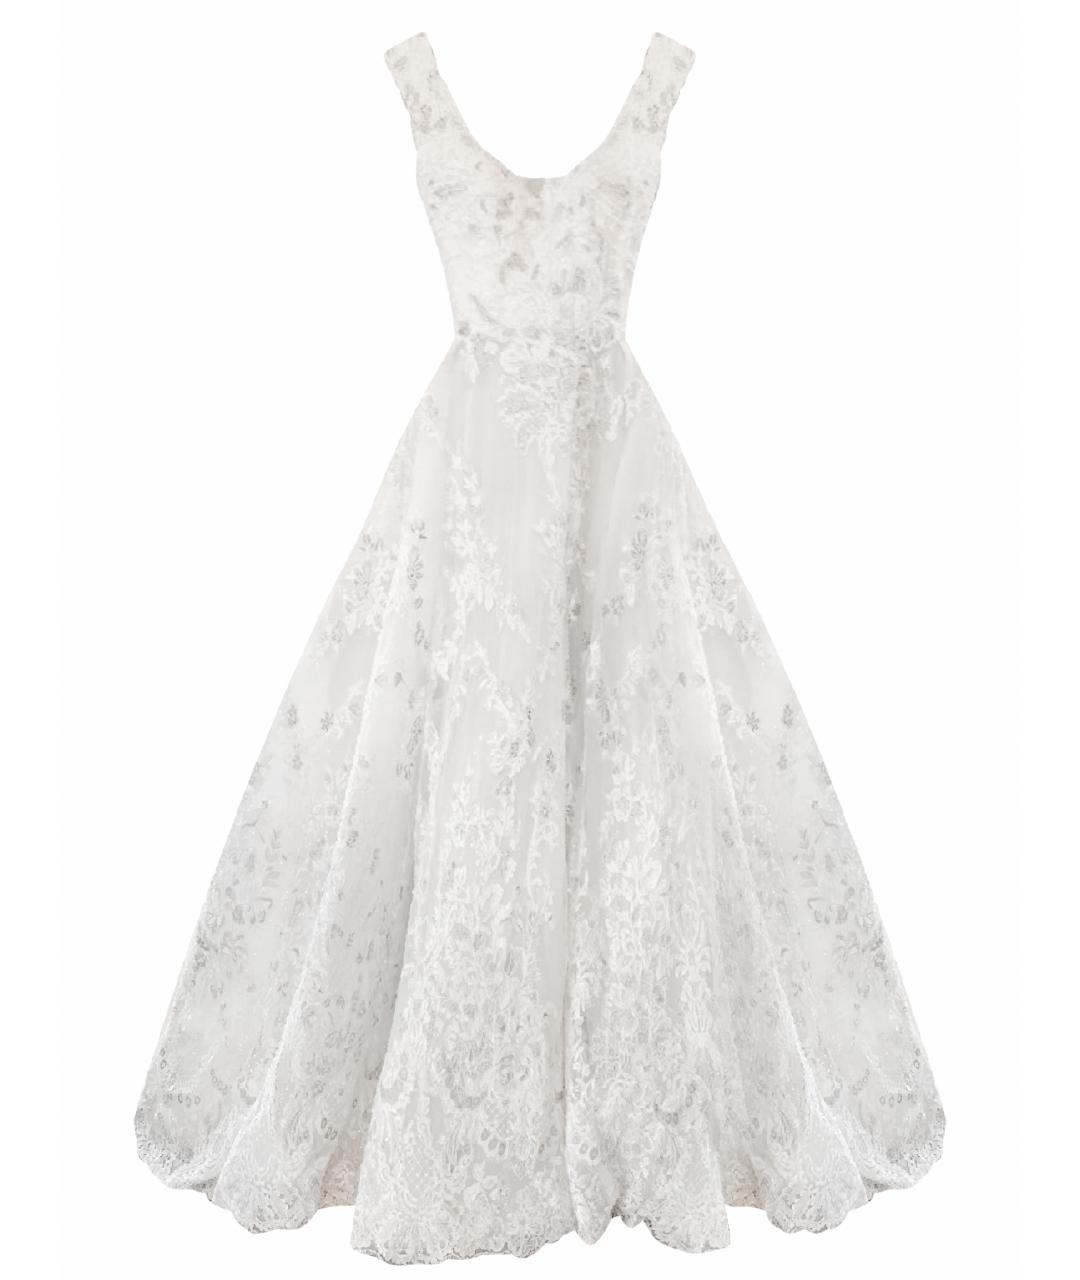 SAIID KOBEISY Белое кружевное свадебное платье, фото 1